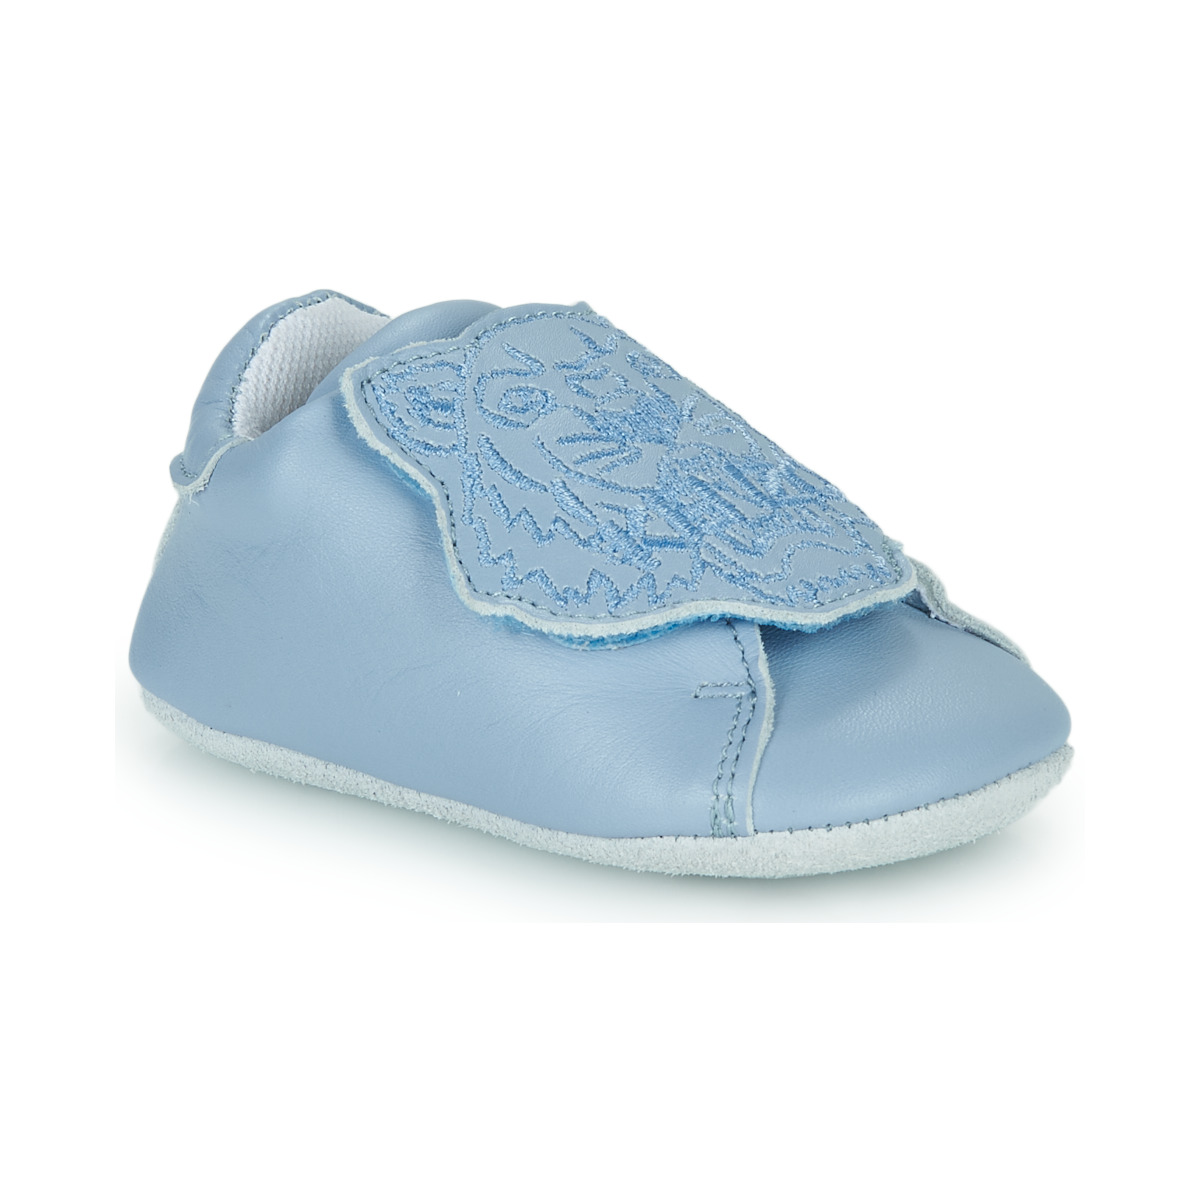 Čevlji  Otroci Nogavice za dojenčke Kenzo K99007 Modra